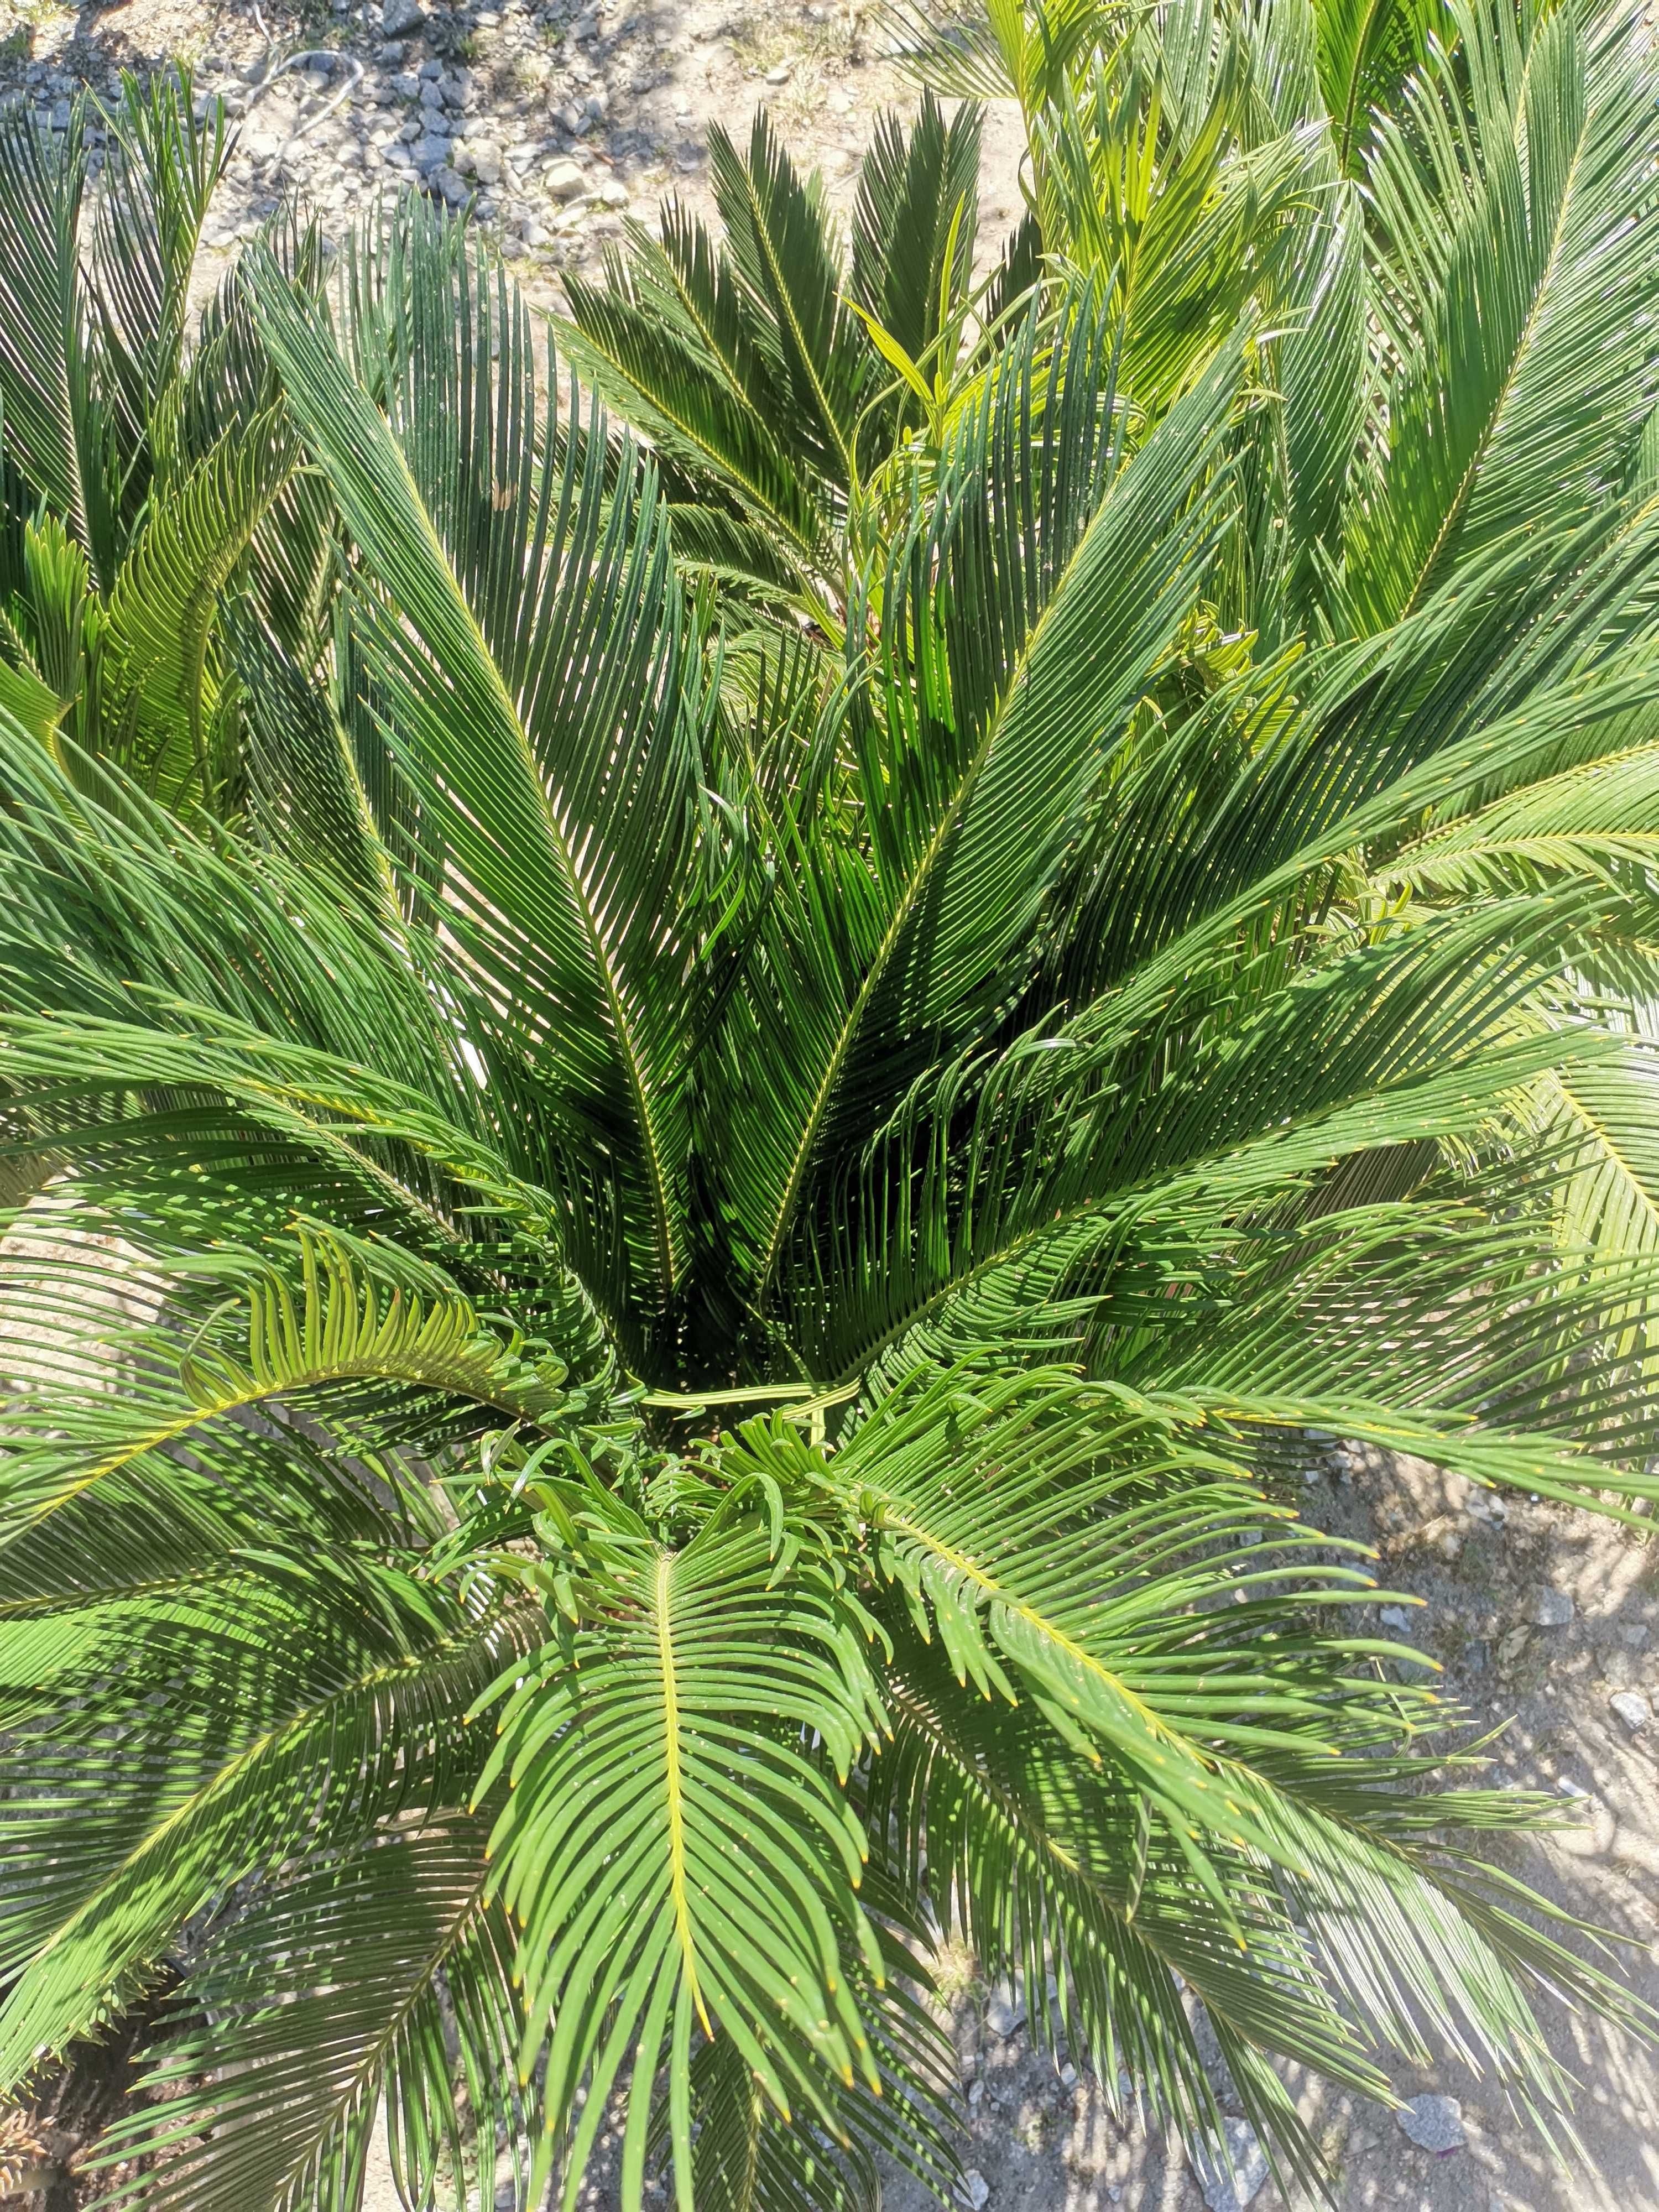 Cykas revoluta, palmy trachycarpus Fortunei, yucca rostrata.